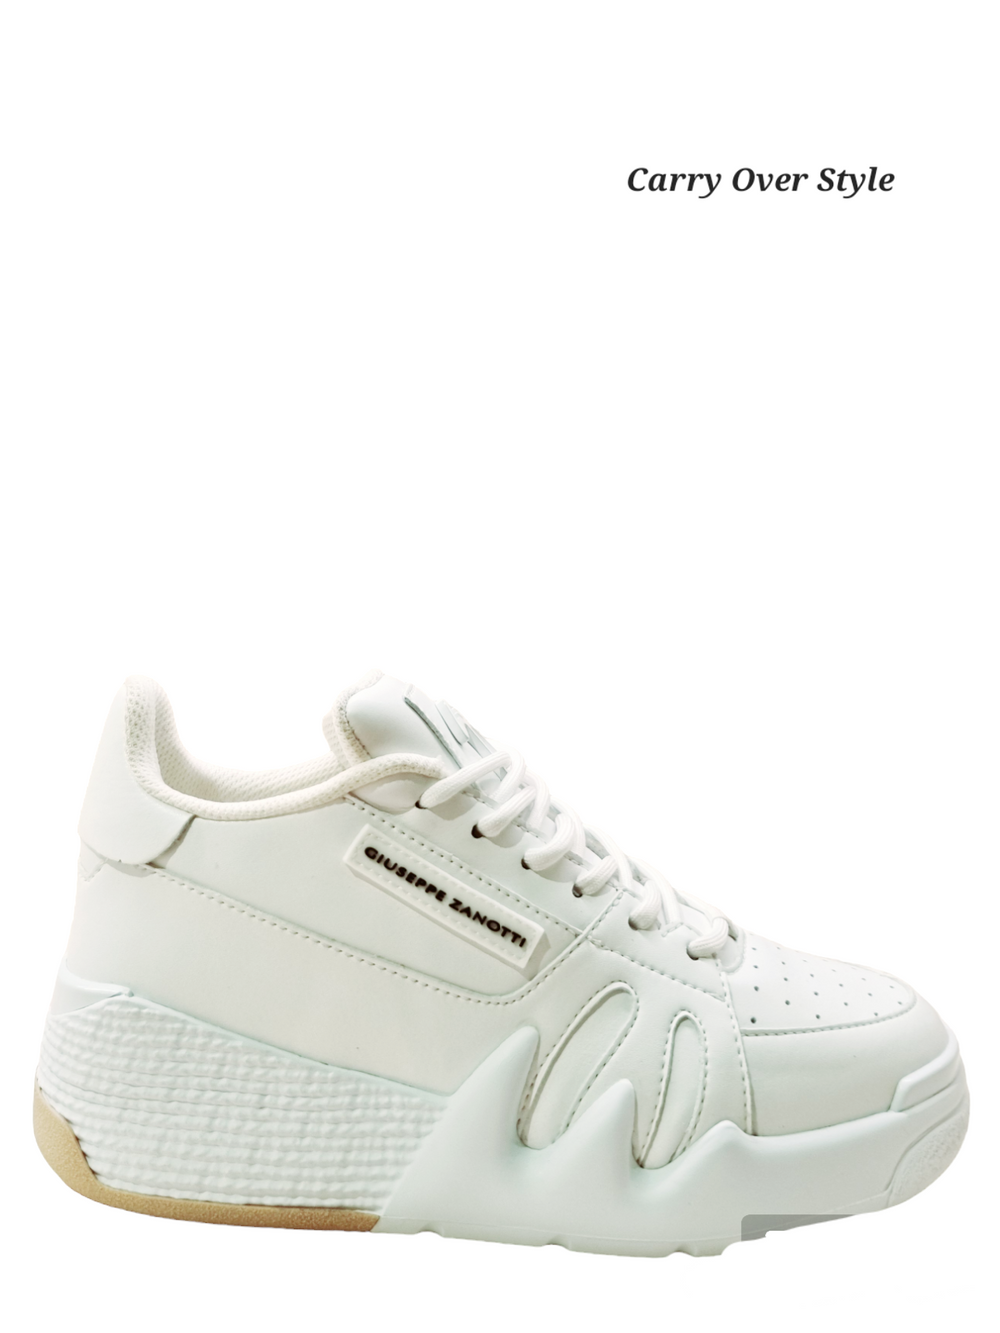 Talon White Leather Sneakers